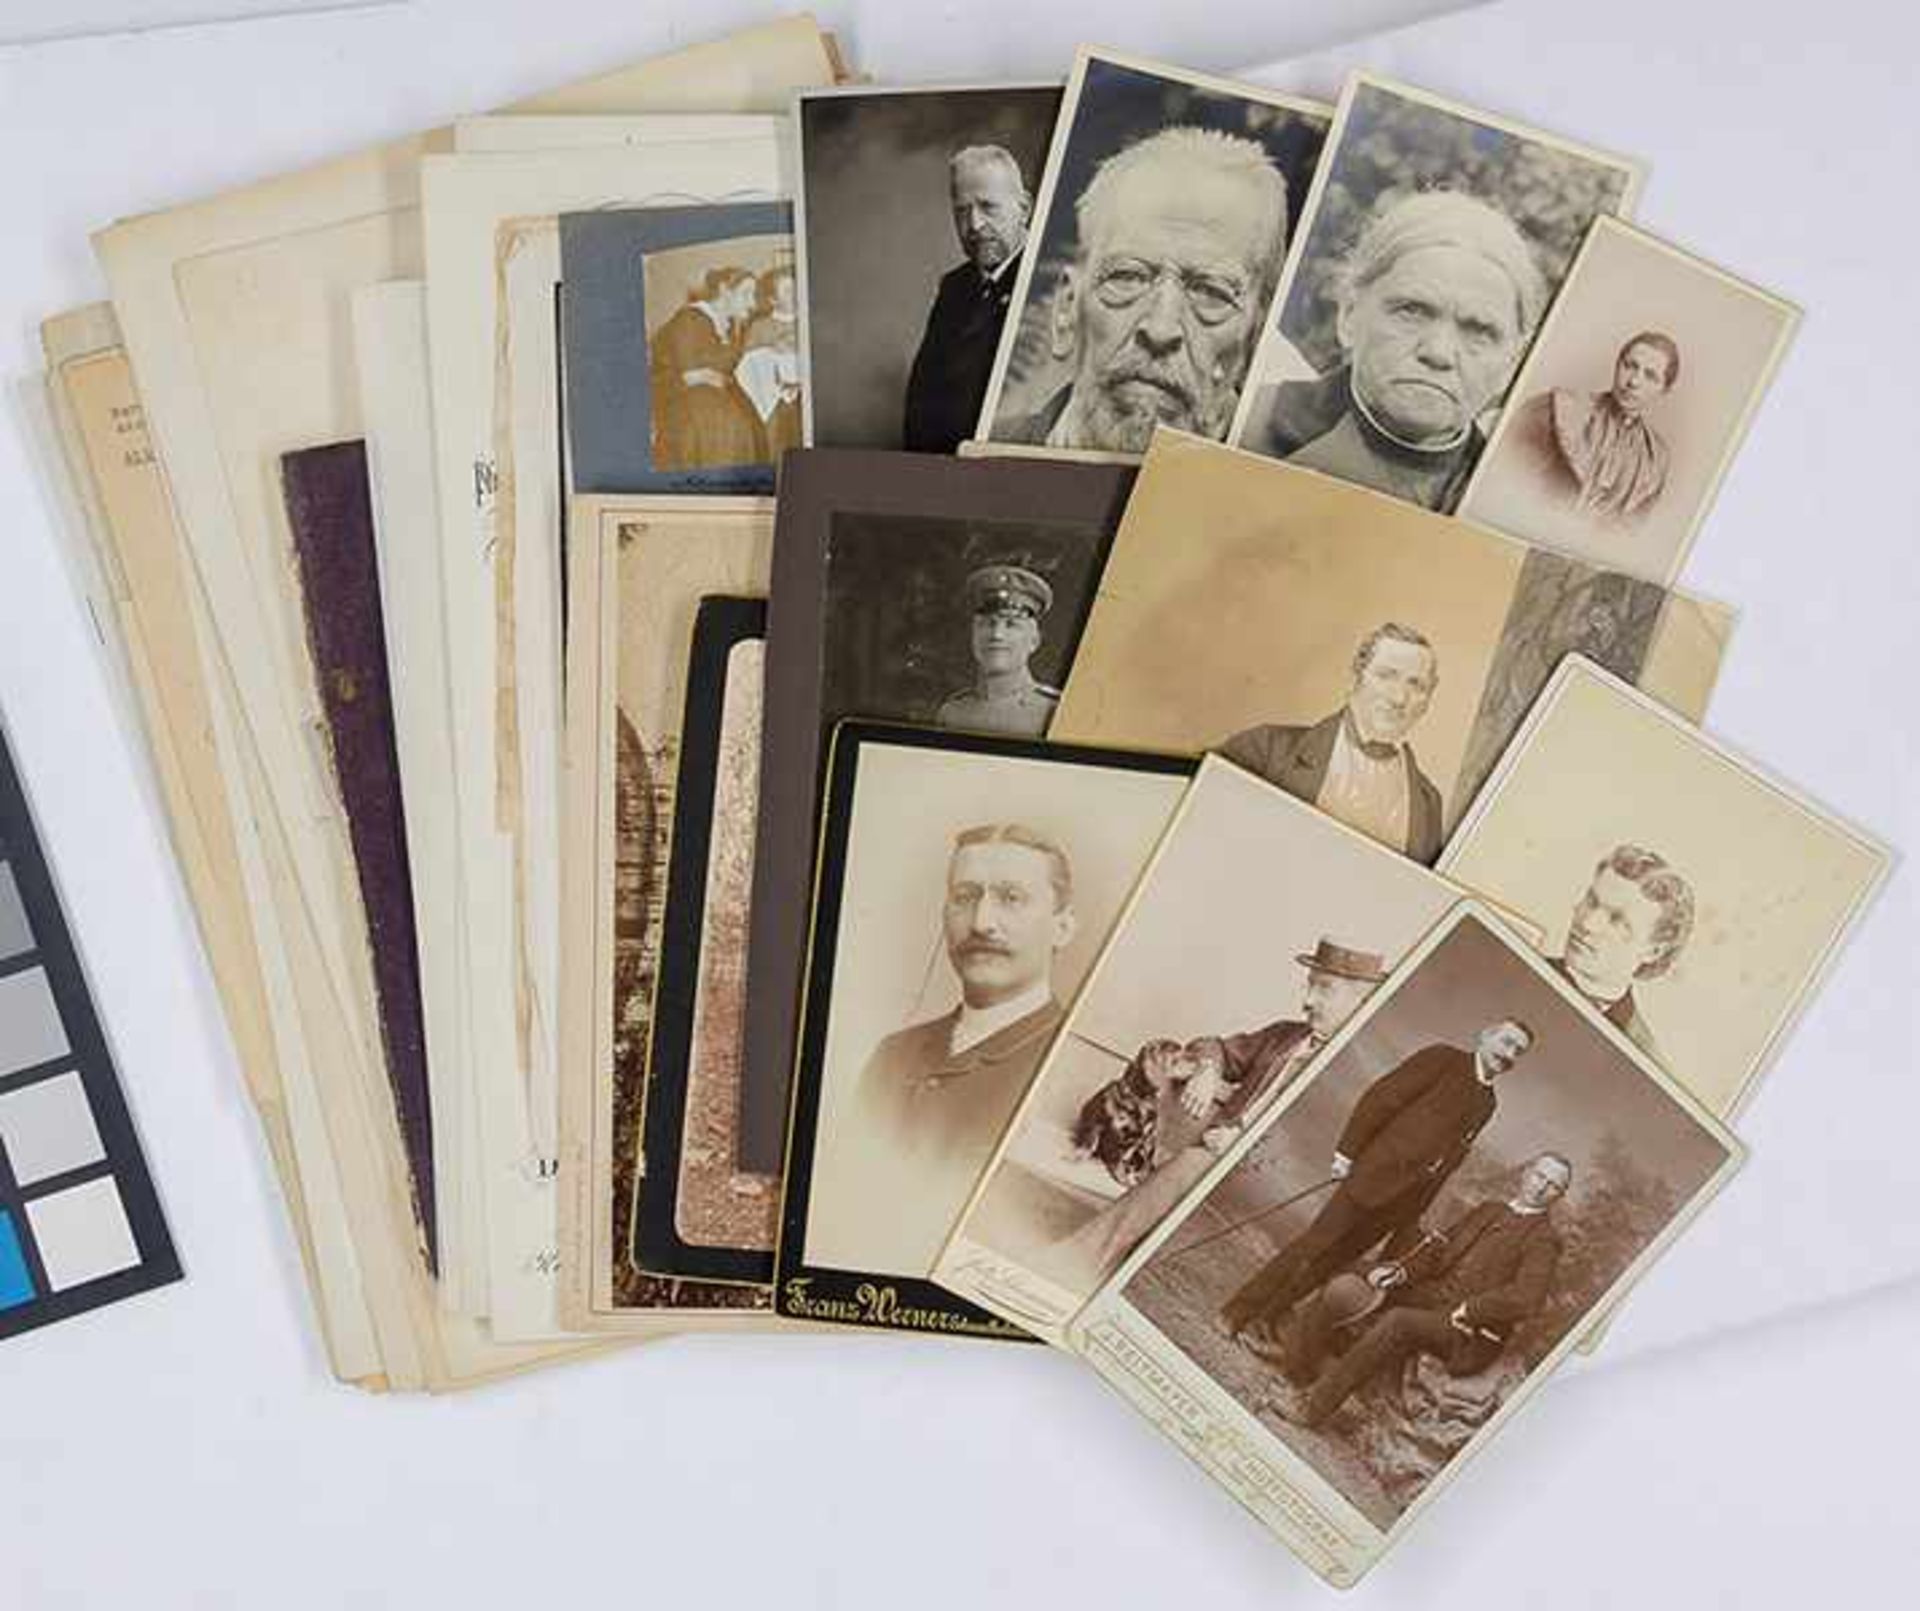 Panizza, Oskar - - Sammlung von knapp 60 Dokumenten zur Familie Panizza in Original-Photographien, - Bild 4 aus 4